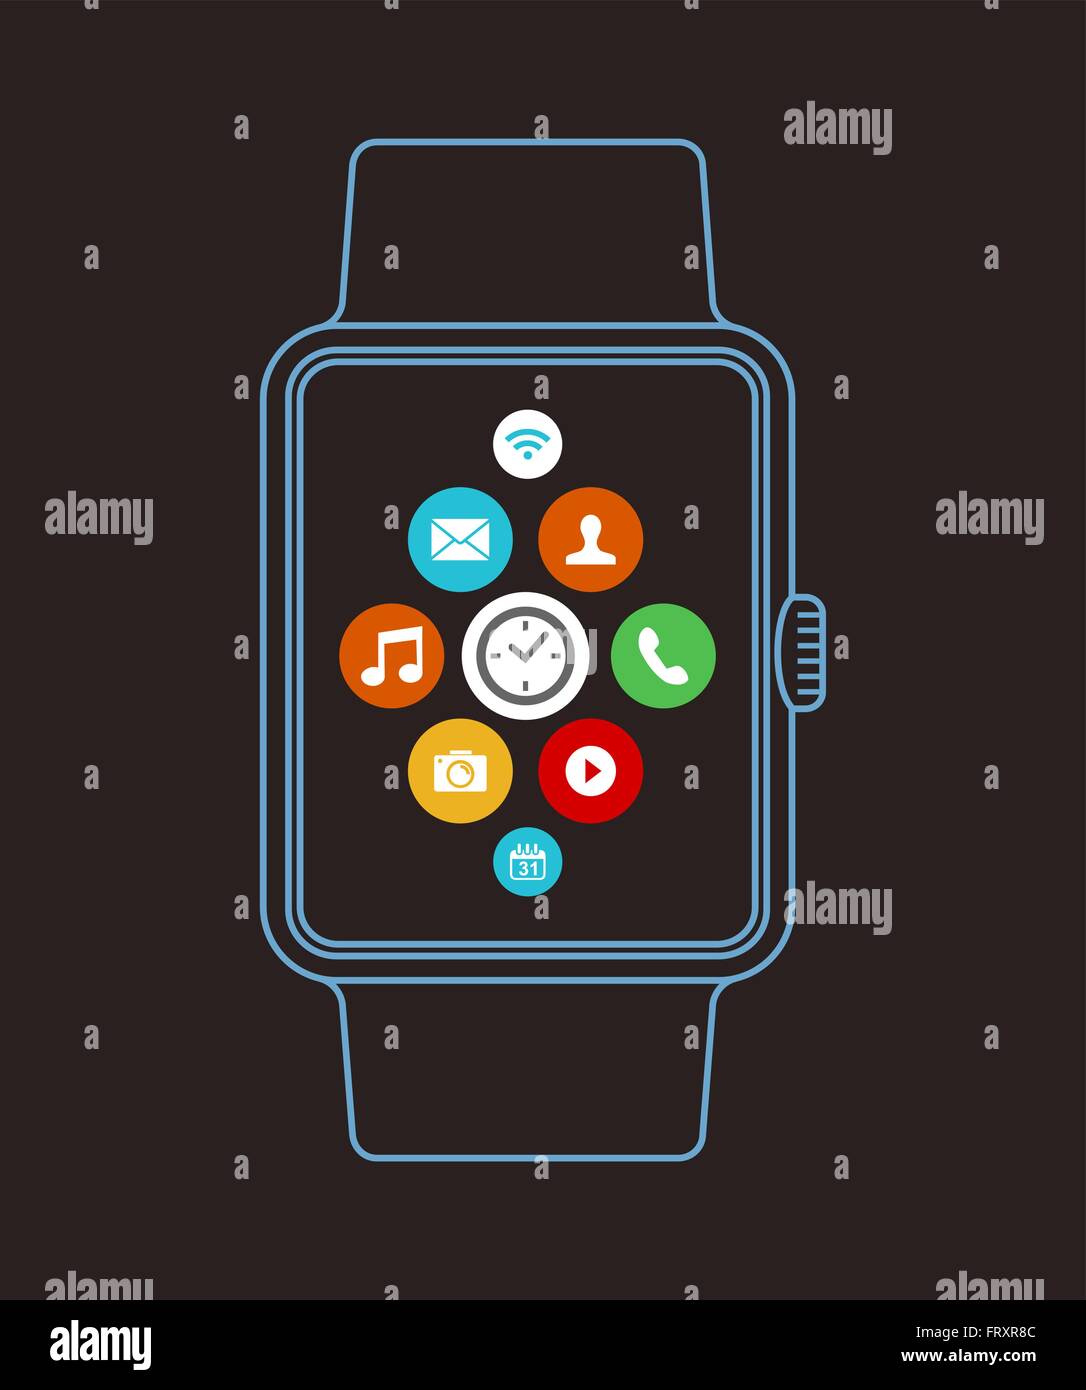 Einfach smart Uhrendesign im modernen Umriss-Stil mit bunten social-app Icons auf dem Bildschirm. EPS10 Vektor. Stock Vektor